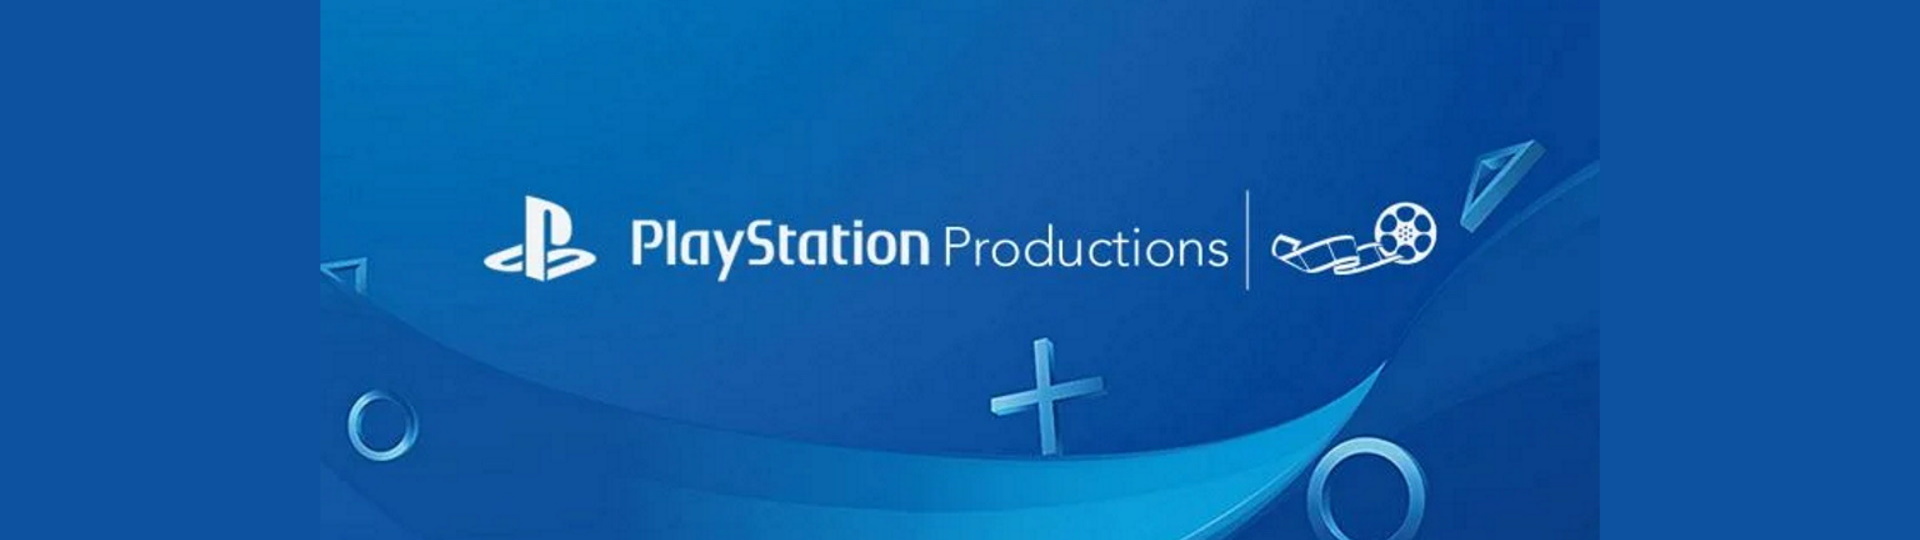 Sony připravuje tři filmy a sedm seriálů podle PlayStation her | Novinky